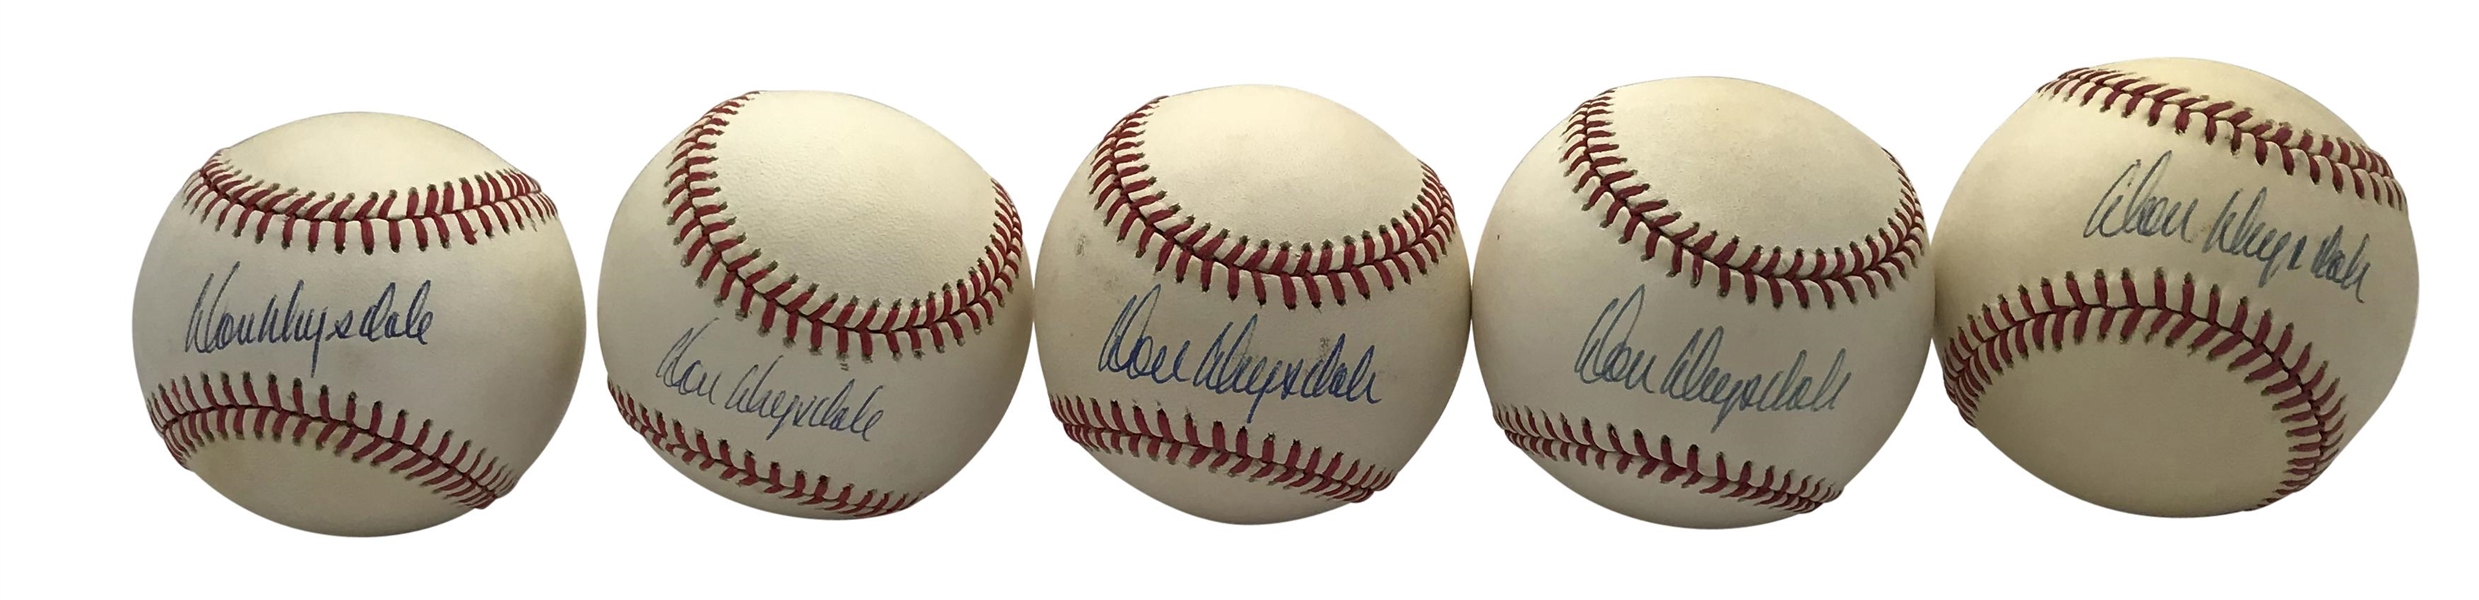 Don Drysdale Lot of Ten (10) Signed ONL Baseballs (PSA/DNA & JSA)